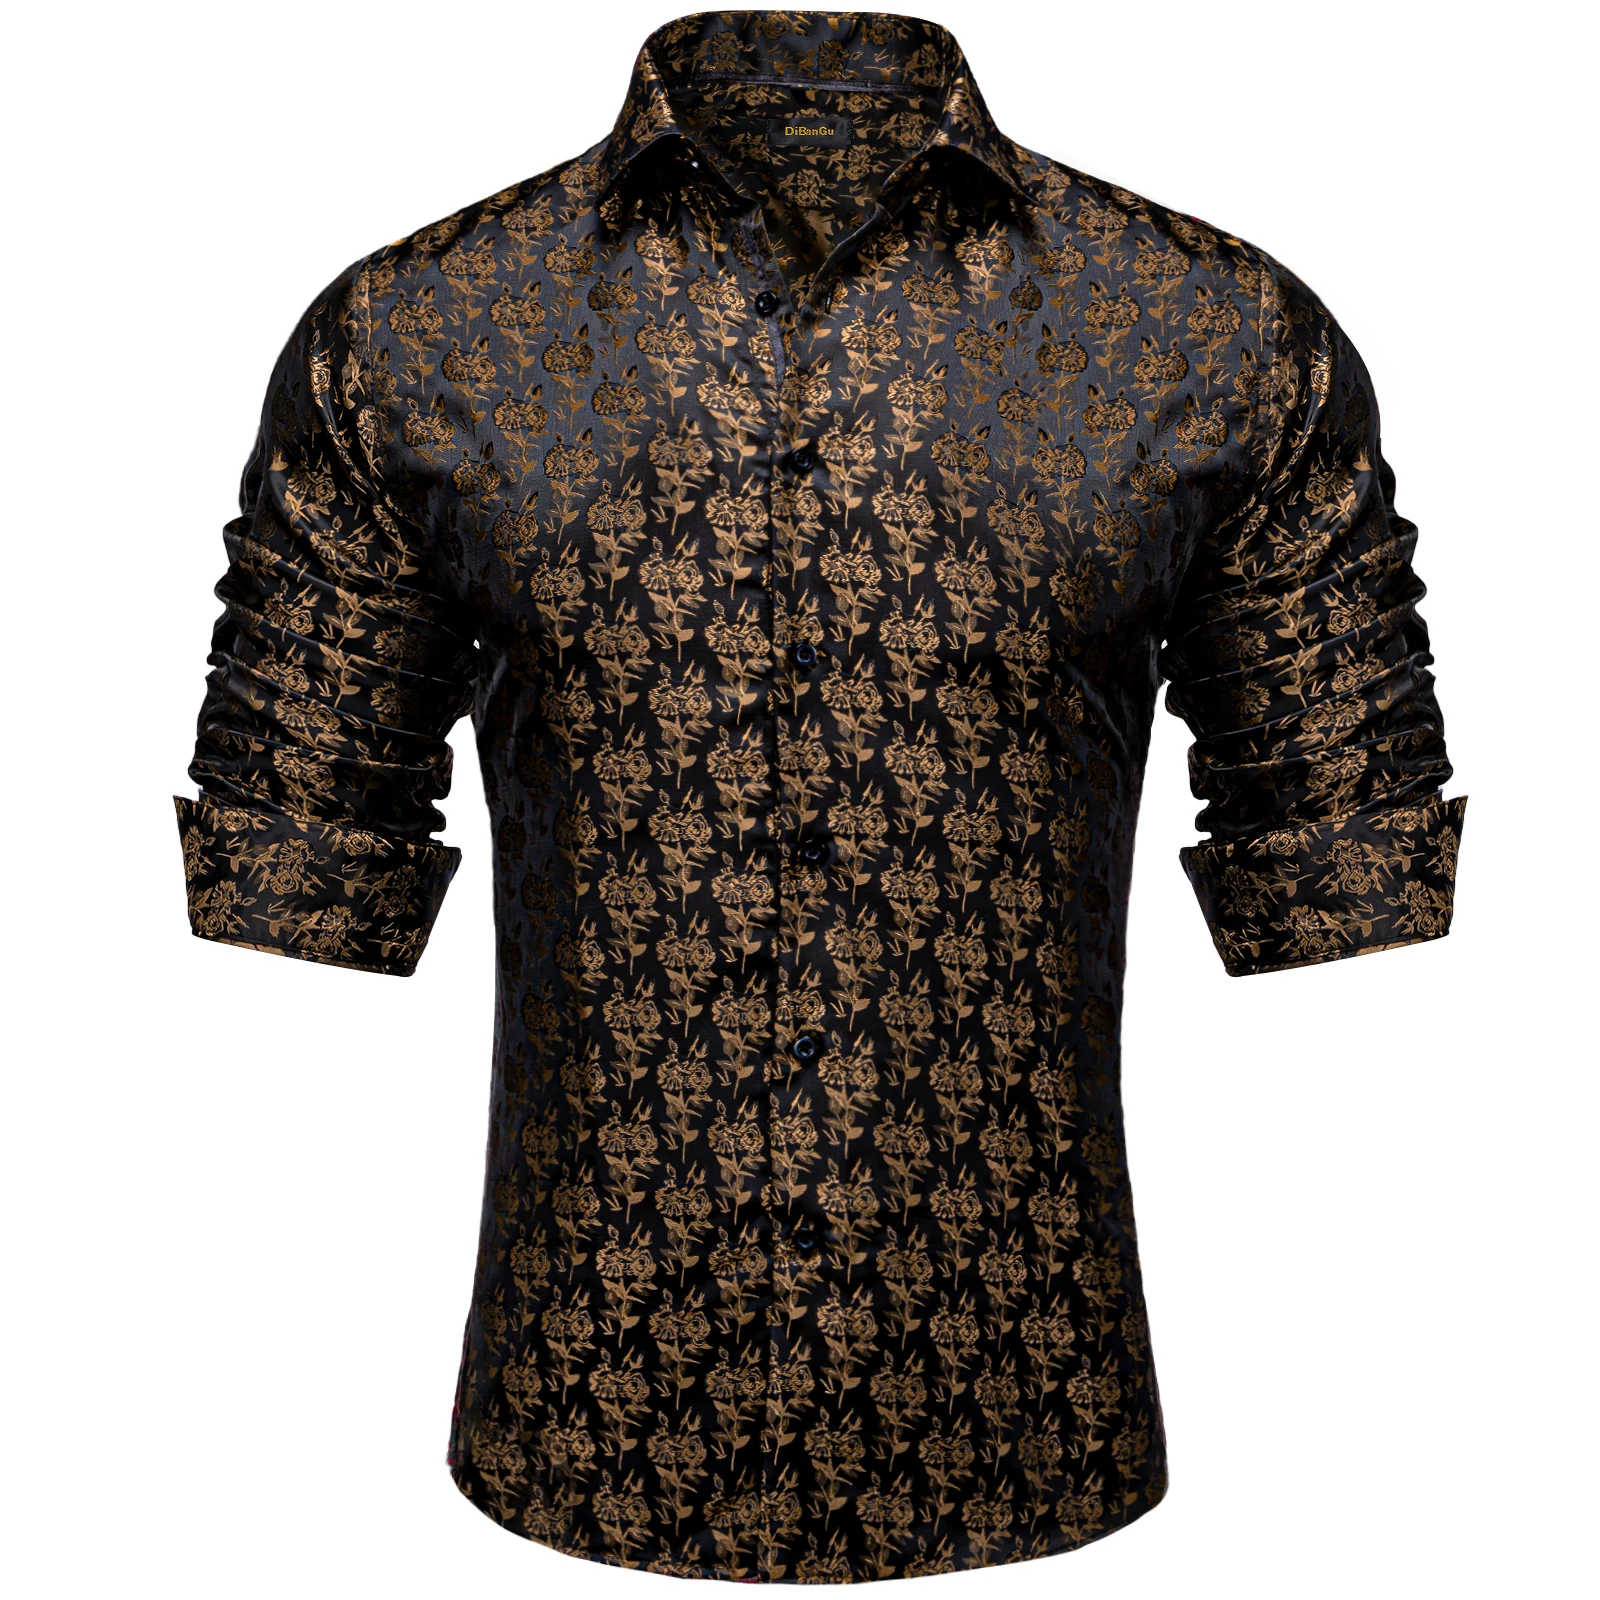 Коричневая мужская рубашка с цветочным рисунком и булавкой на воротнике, уникальная четырехсезонная блузка для мужчин, аксессуары camisa masculina для бизнеса Изображение 1